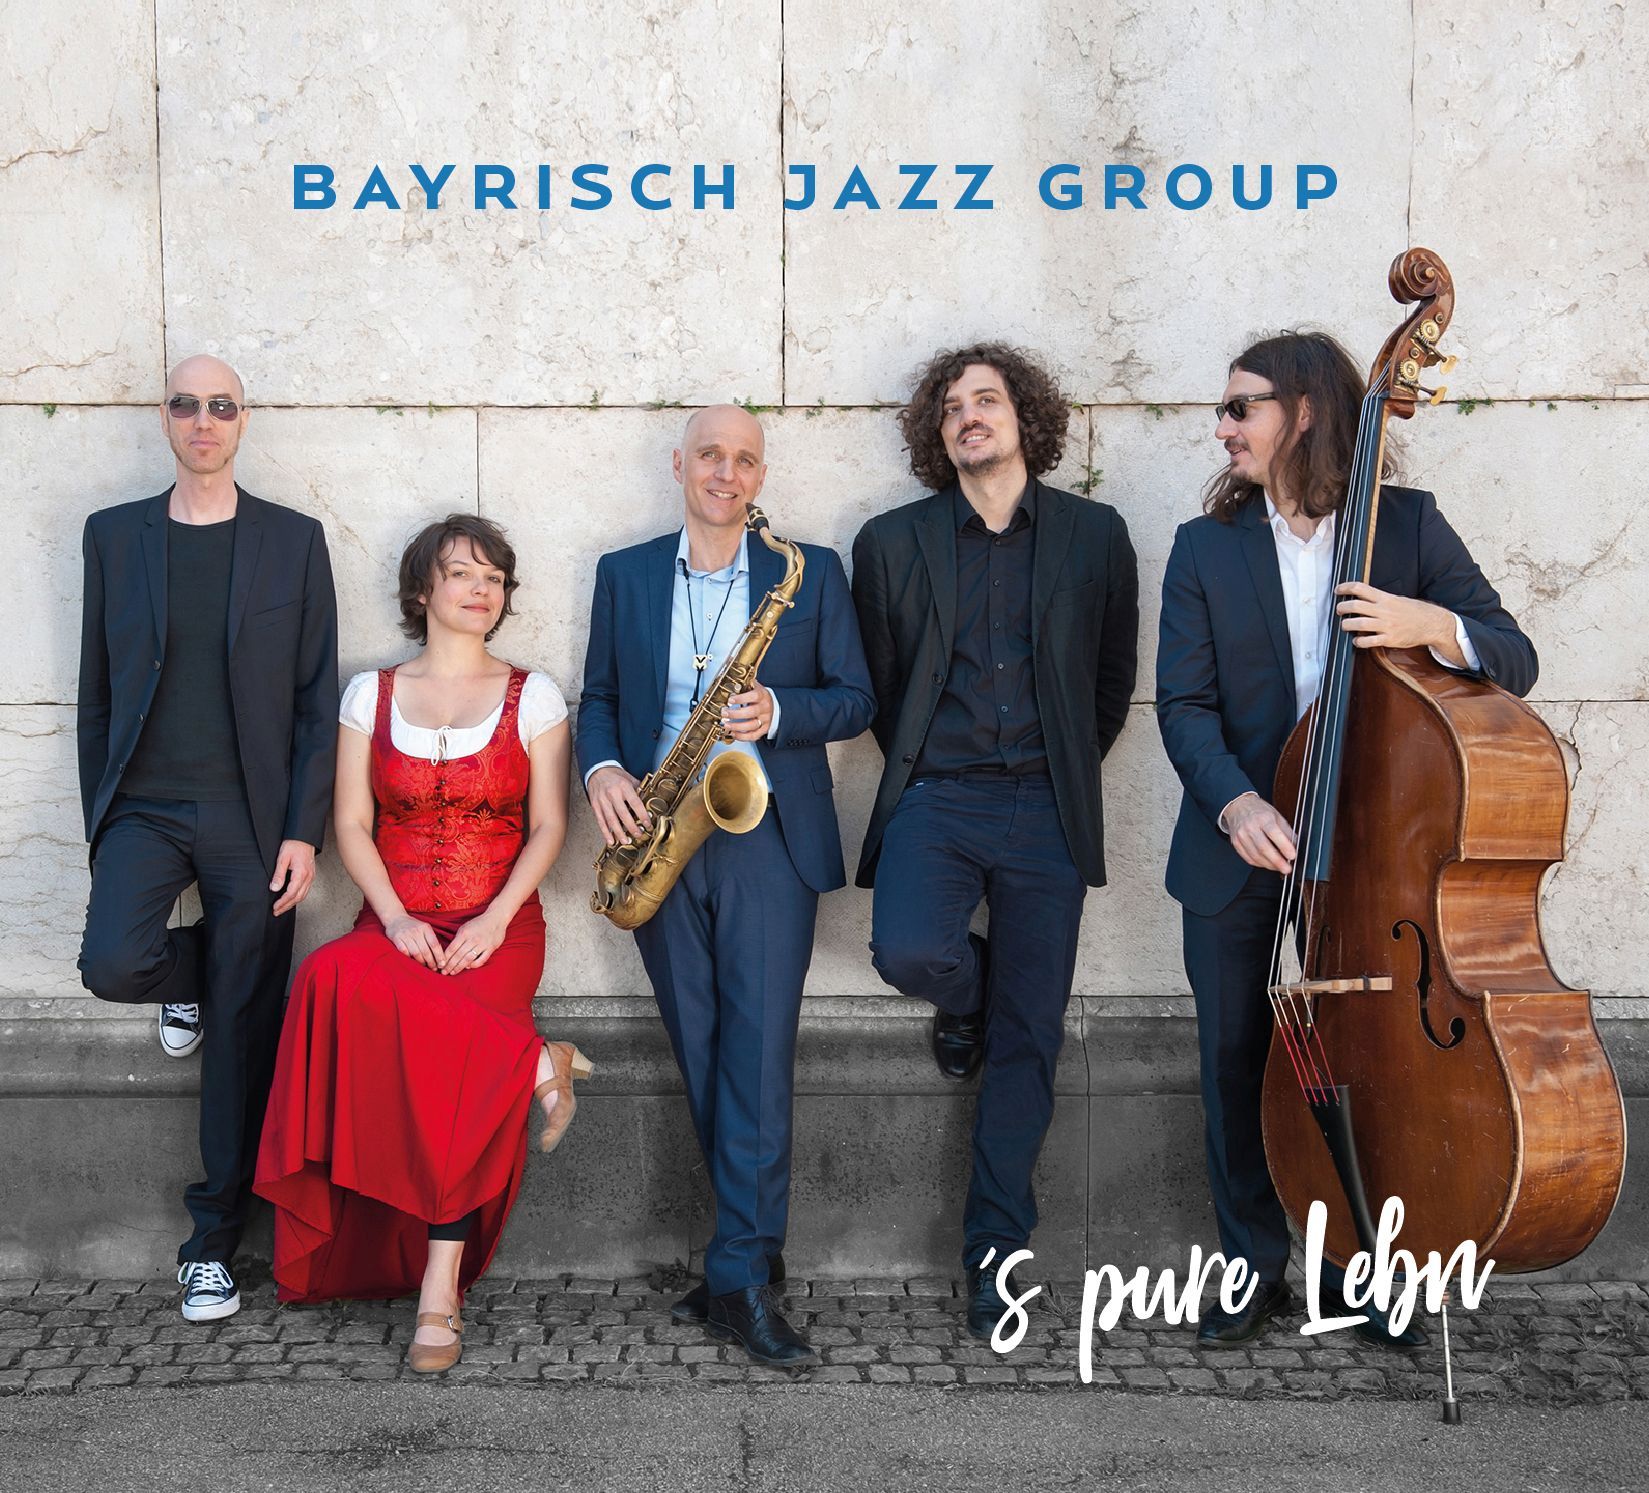 Bayrisch Jazz Group - 's pure Lebn